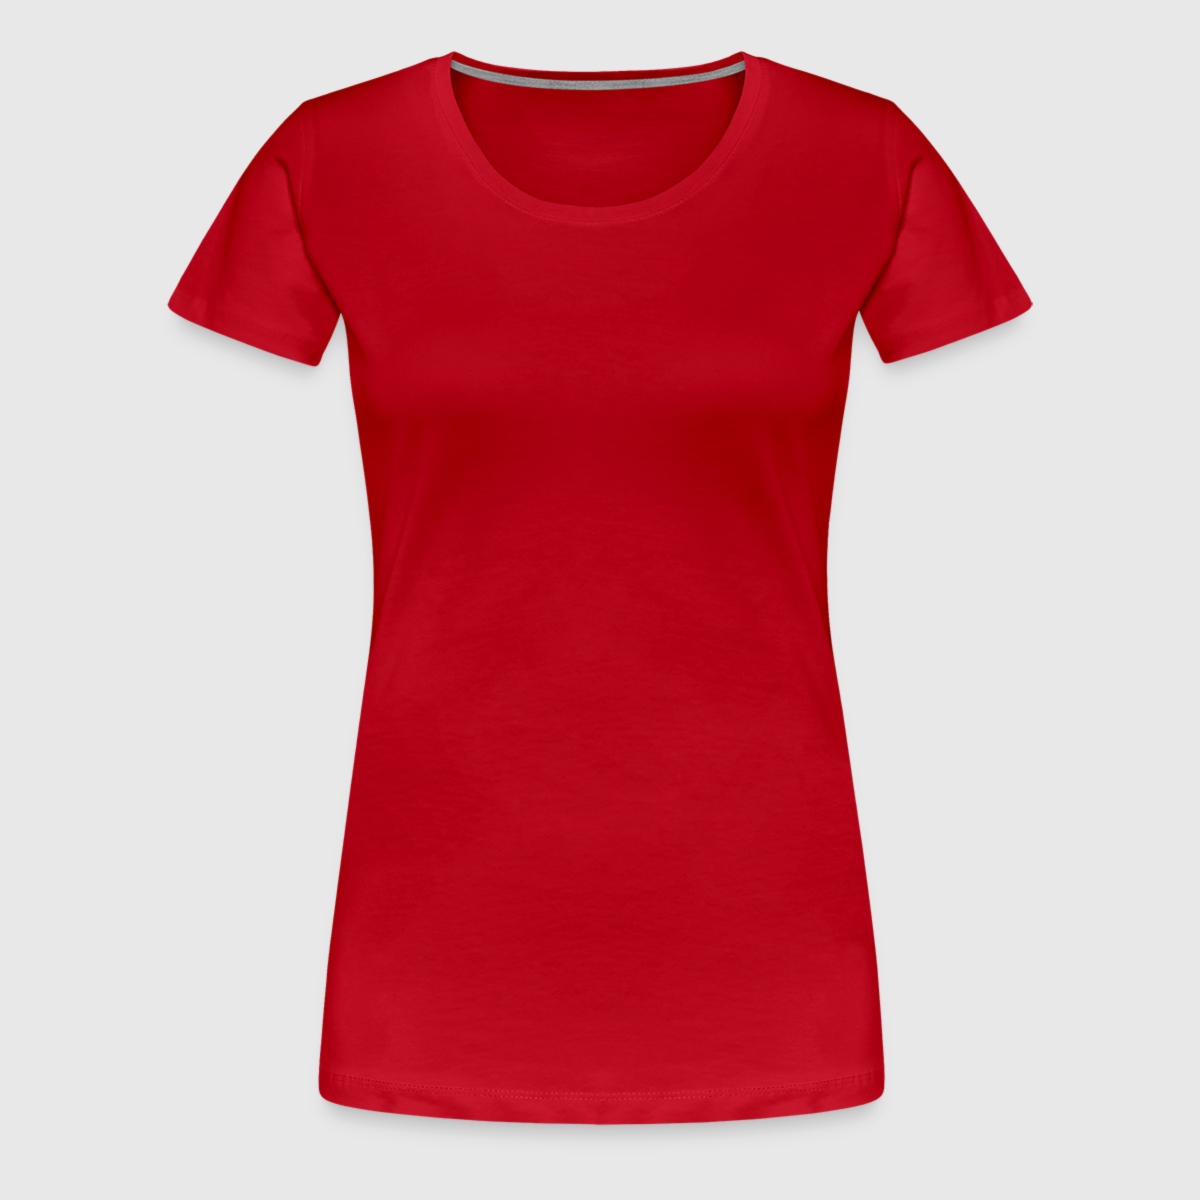 Frauen Premium T-Shirt - Vorne